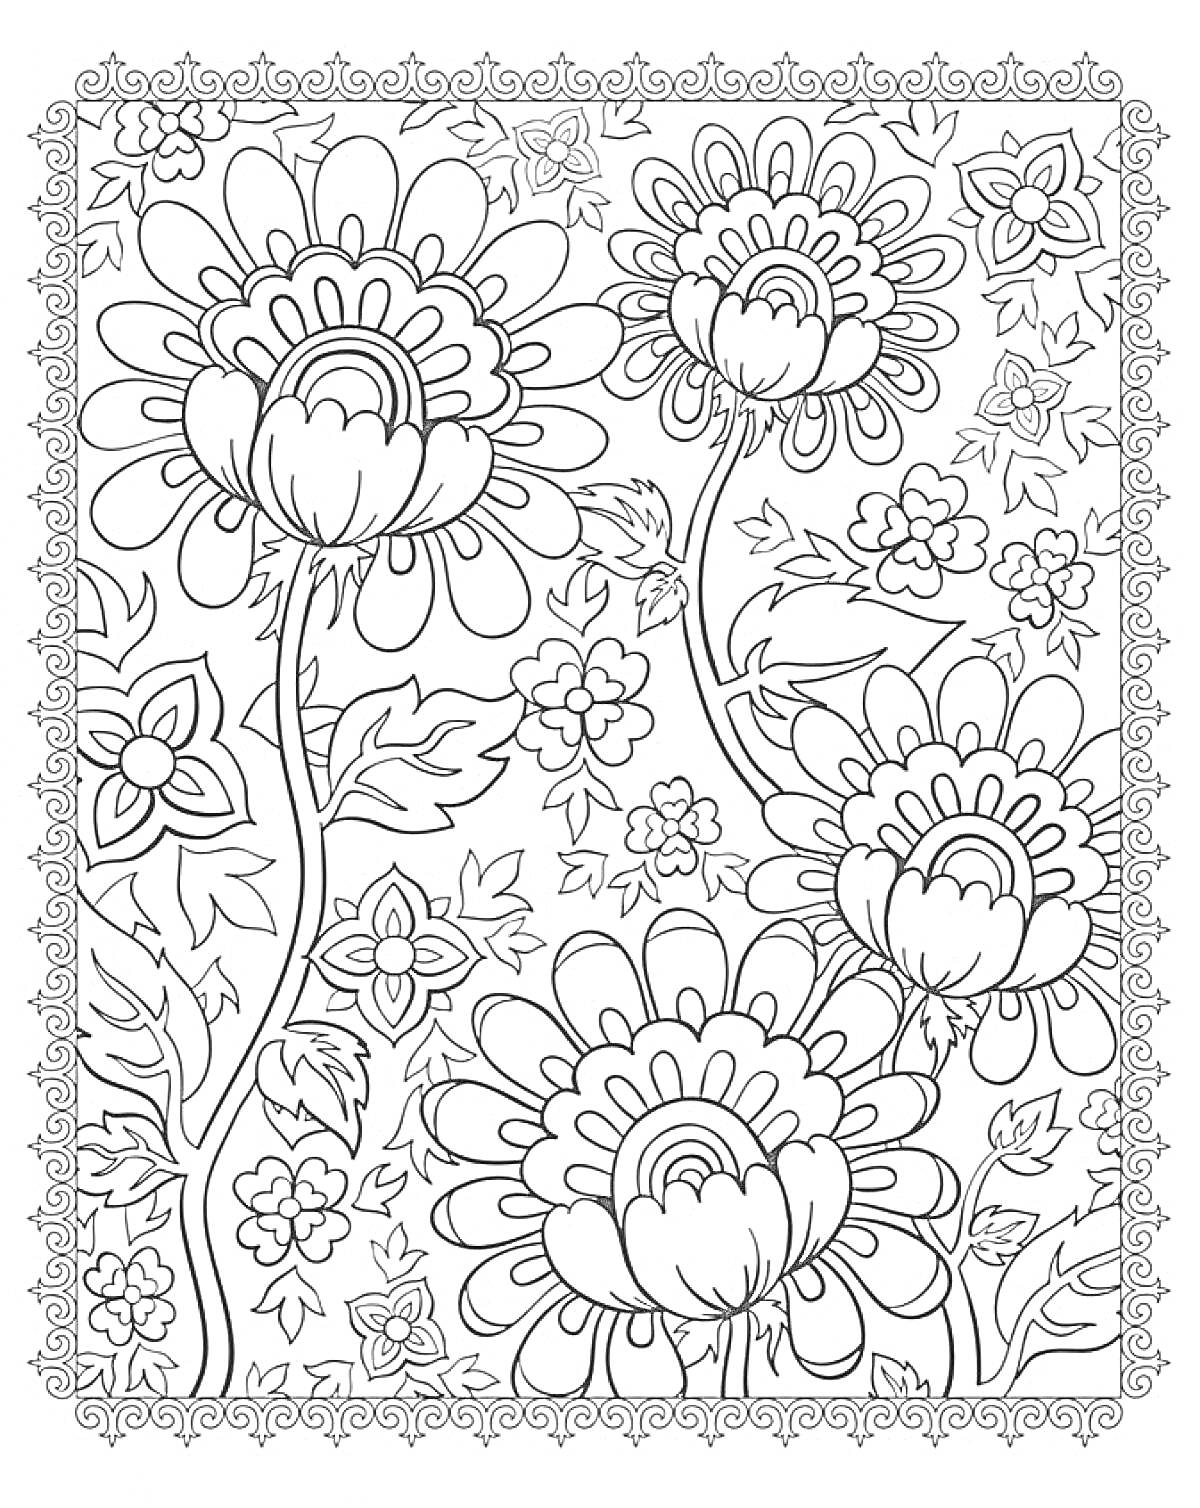 Раскраска Крупные цветы с листьями, мелкие цветочки и декоративная рамка